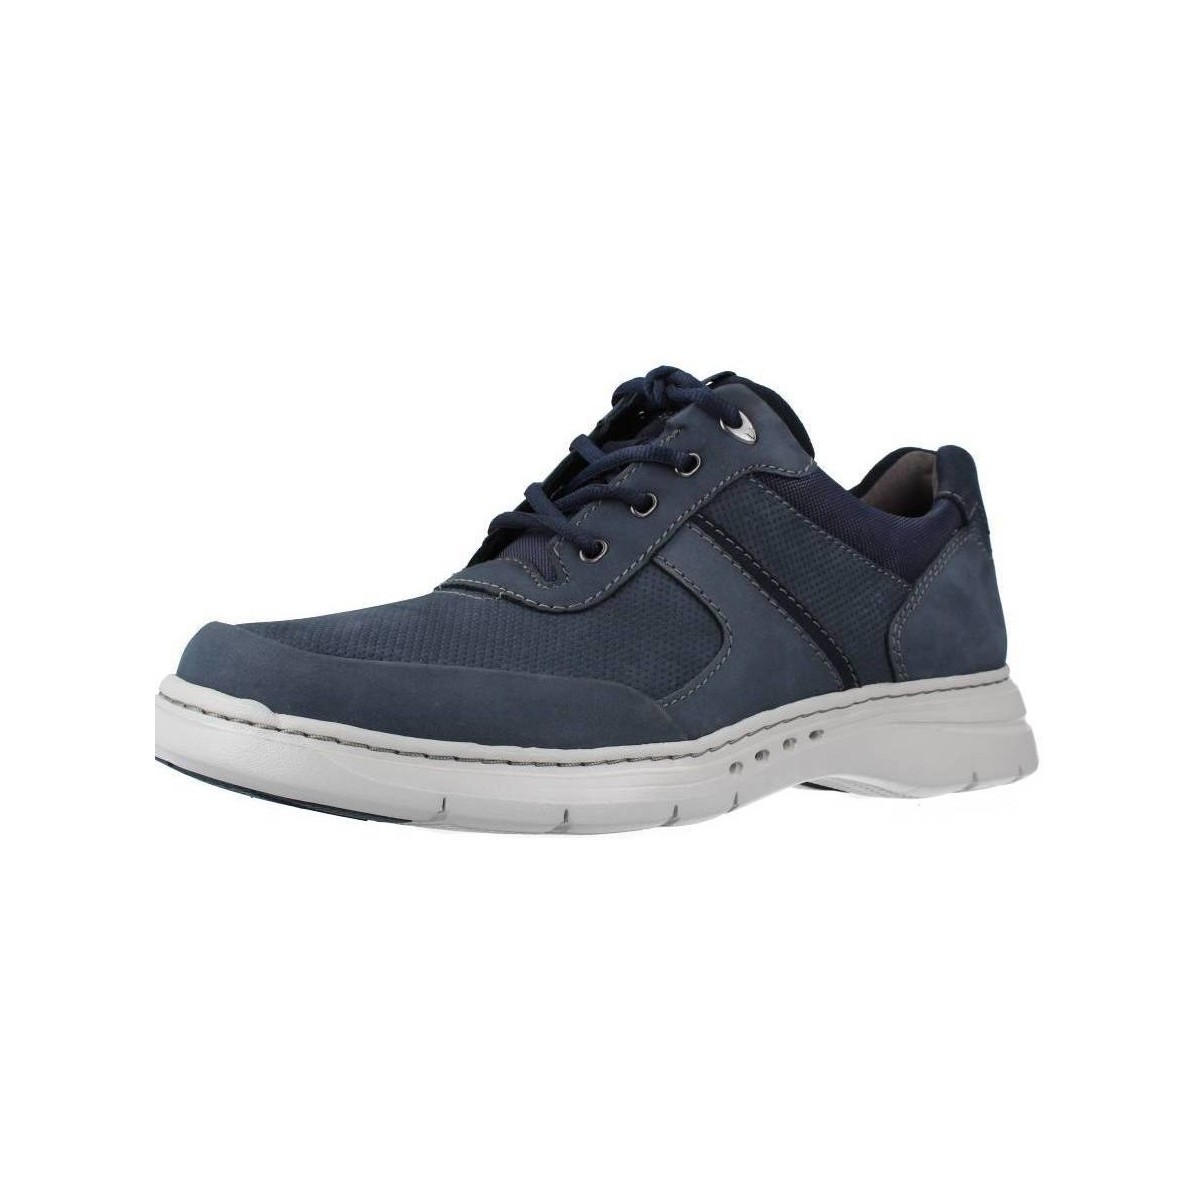 Schoenen Heren Sneakers Clarks 26161649 Blauw